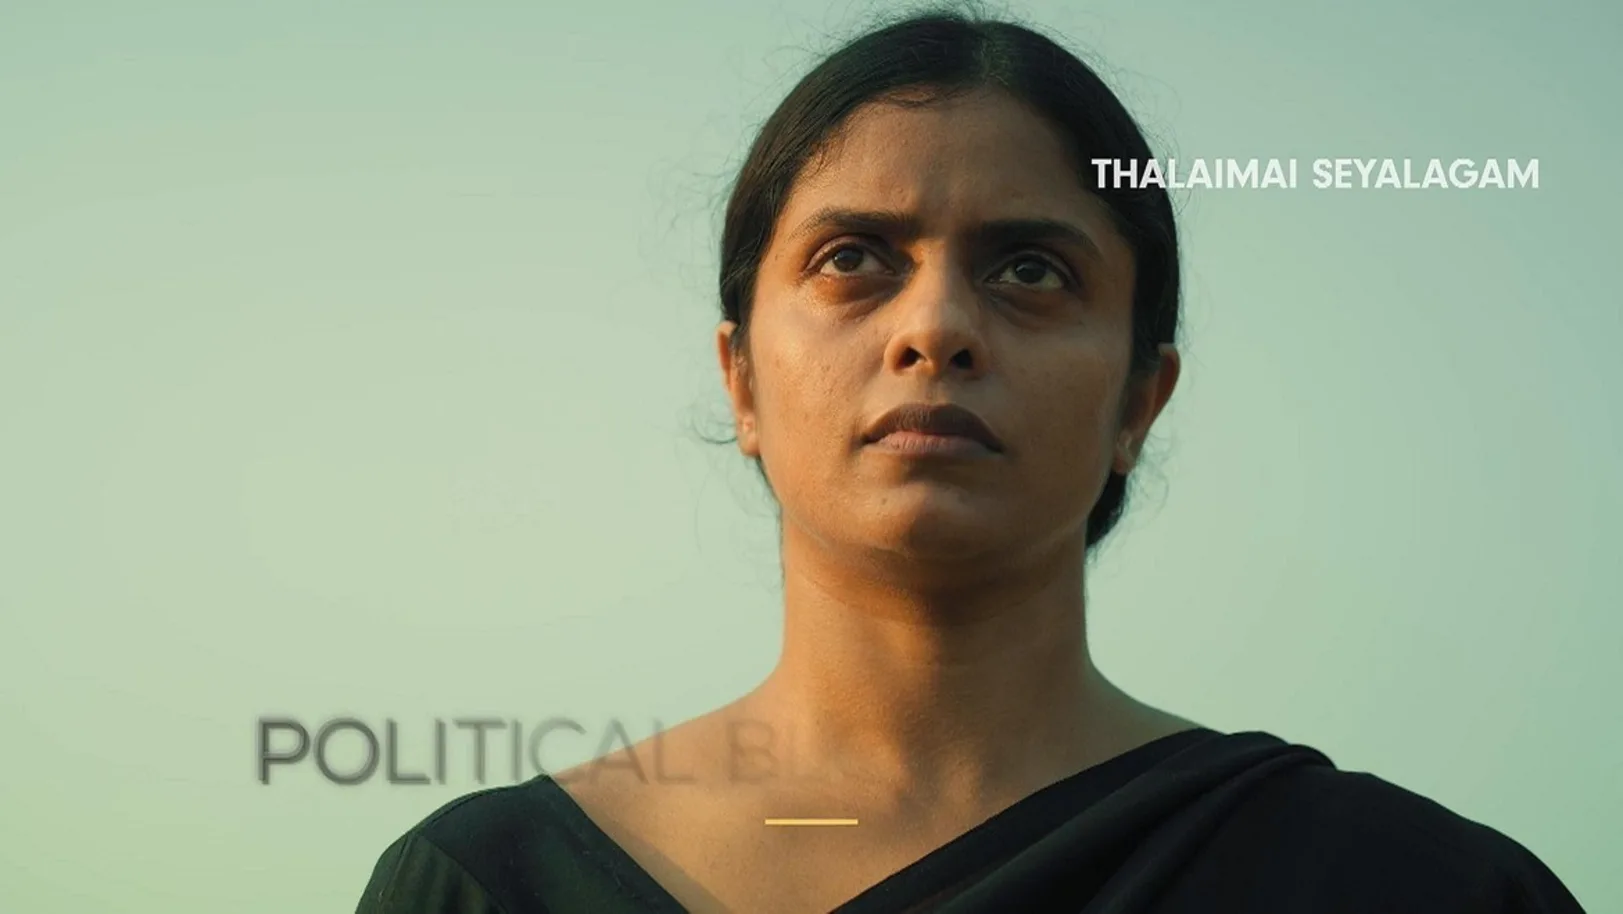 Thalaimai Seyalagam | A Political Blockbuster | Trailer